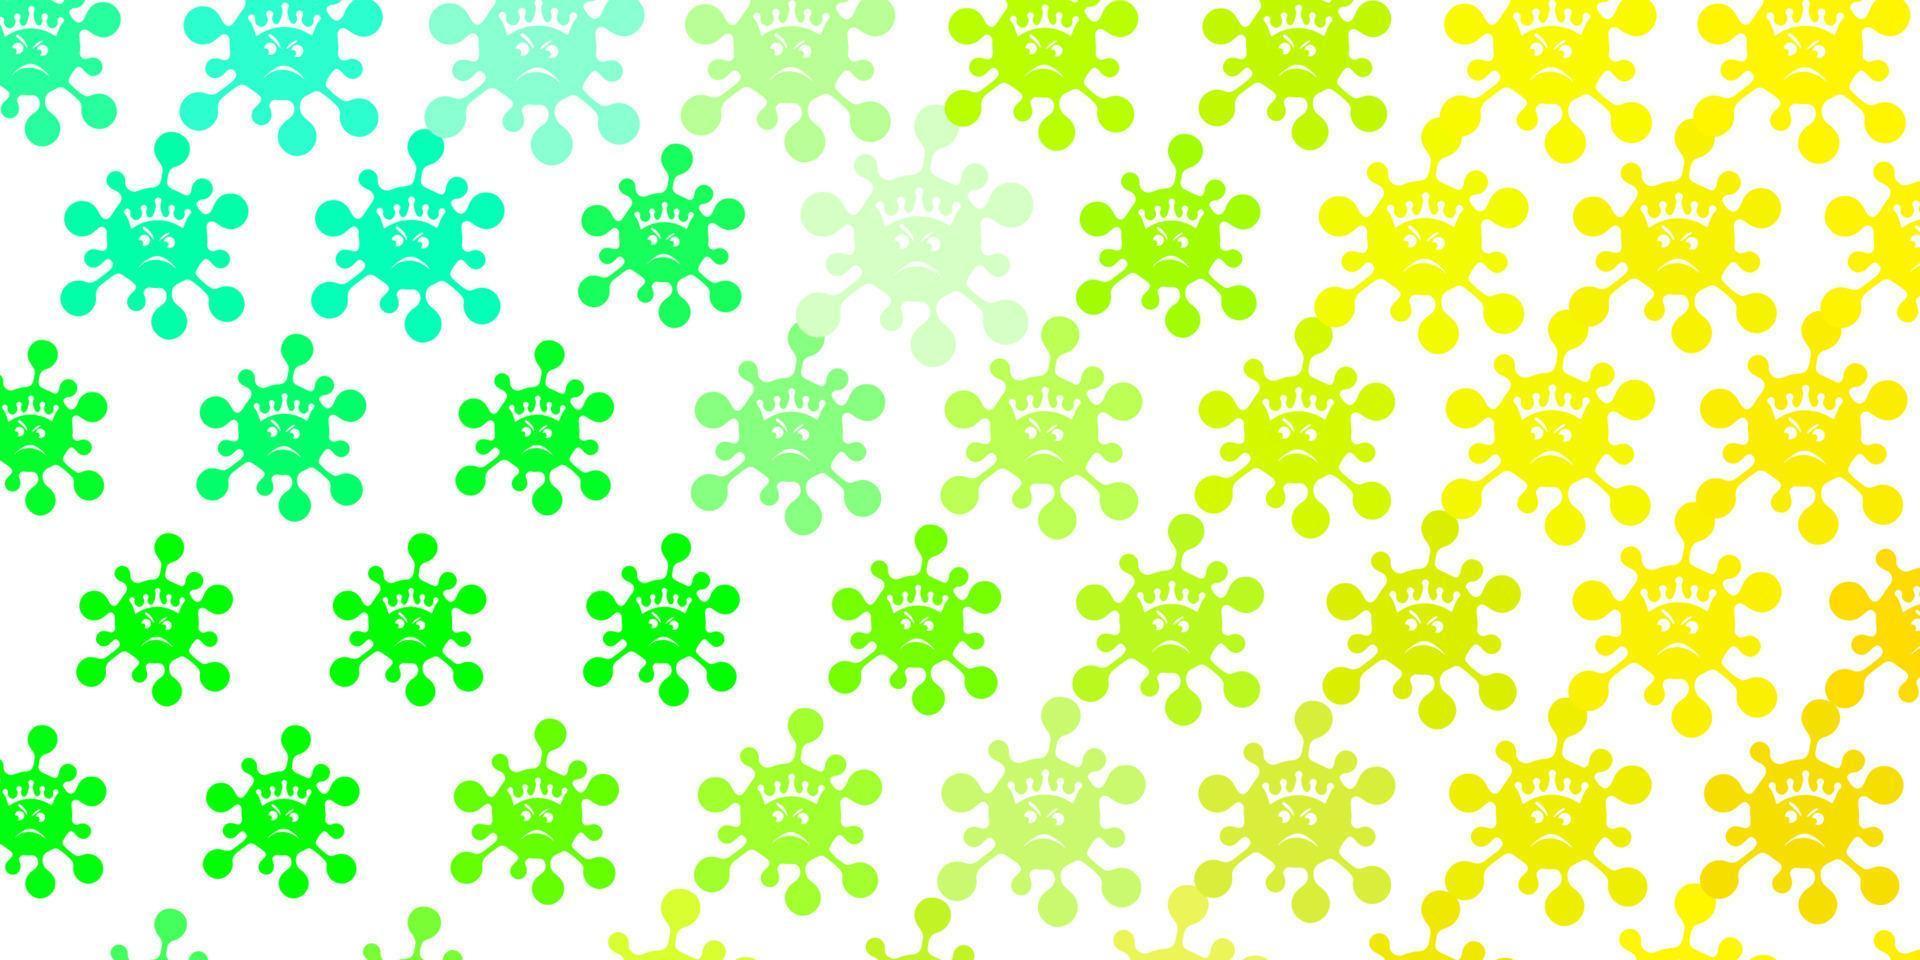 ljusgrön, gul vektor bakgrund med virussymboler.